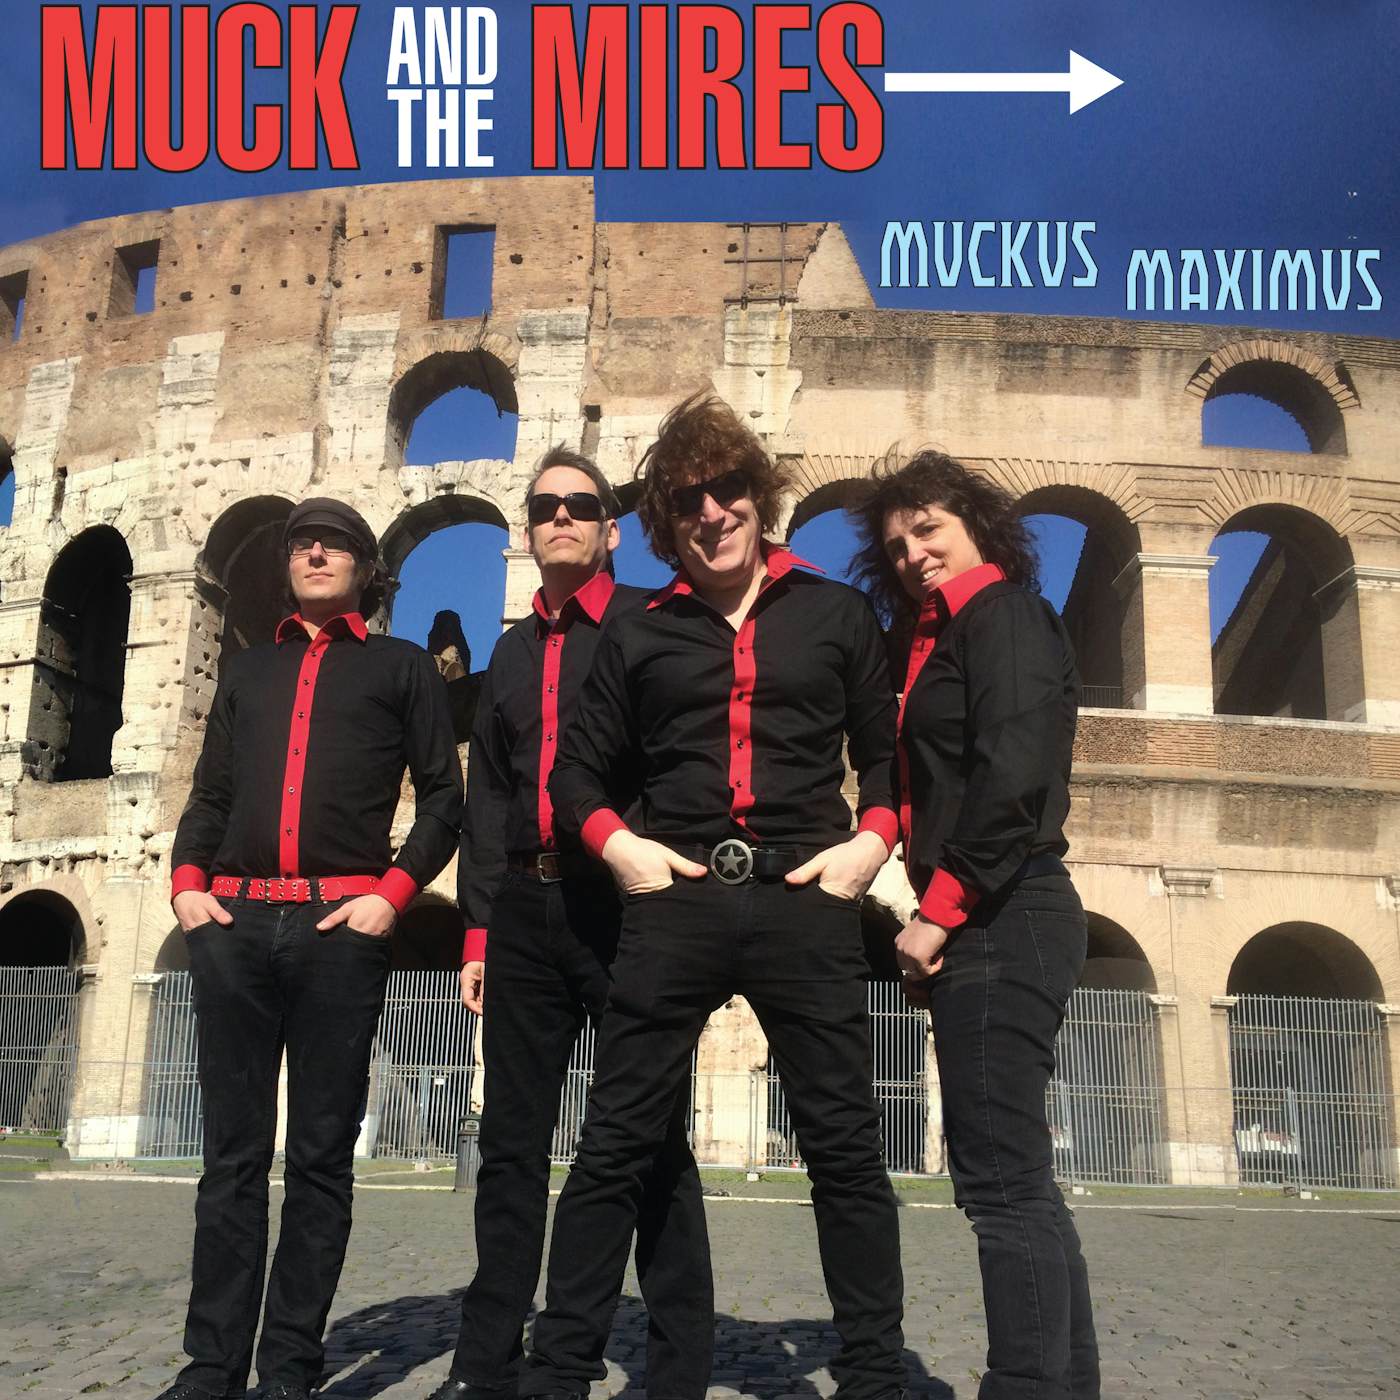 Muck & The Mires Muckus Maximus Vinyl Record